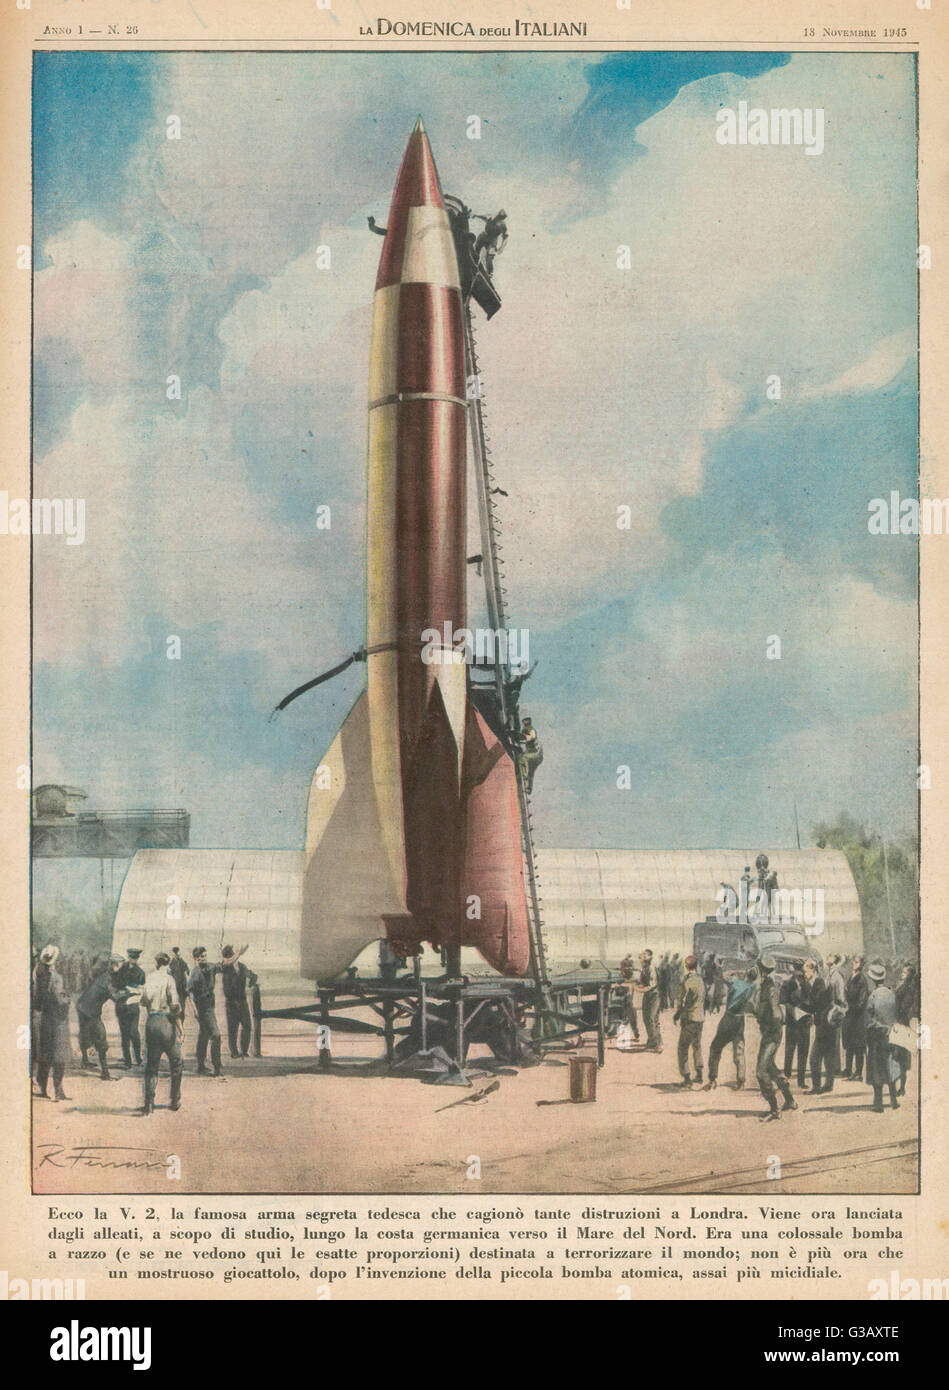 Die V2-Rakete "Vergeltungswaffe" (Rache Waffe) war die erste ballistische Langstreckenrakete mit einem 1-Tonnen-Sprengkopf die es mit einer Geschwindigkeit von 5000 k/h Datum geliefert: 1945 Stockfoto